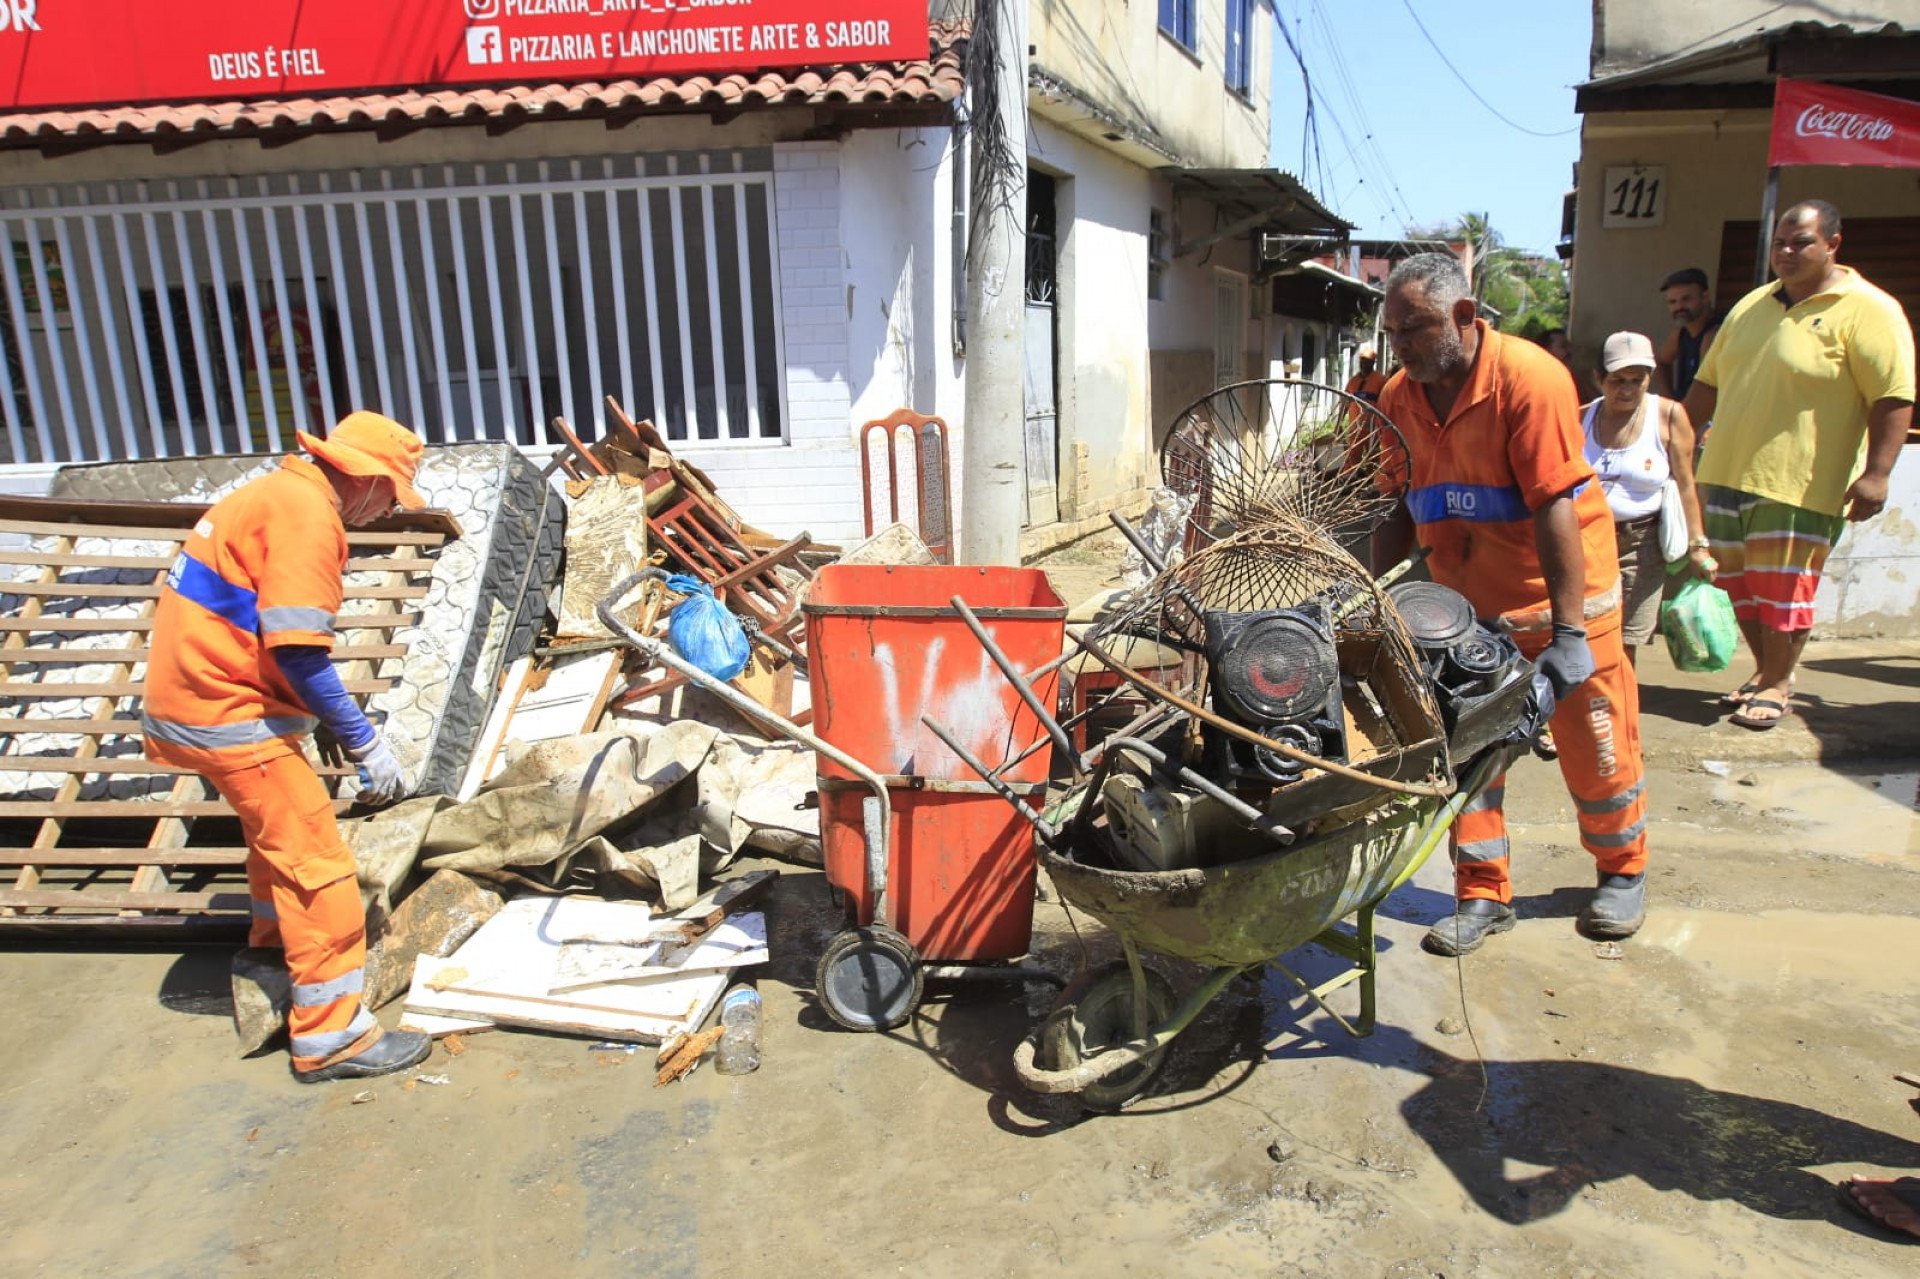 Móveis estragados e lixo empilhado em esquina da rua inundada por rompimento adutora - Reginaldo Pimenta/Agência O Dia